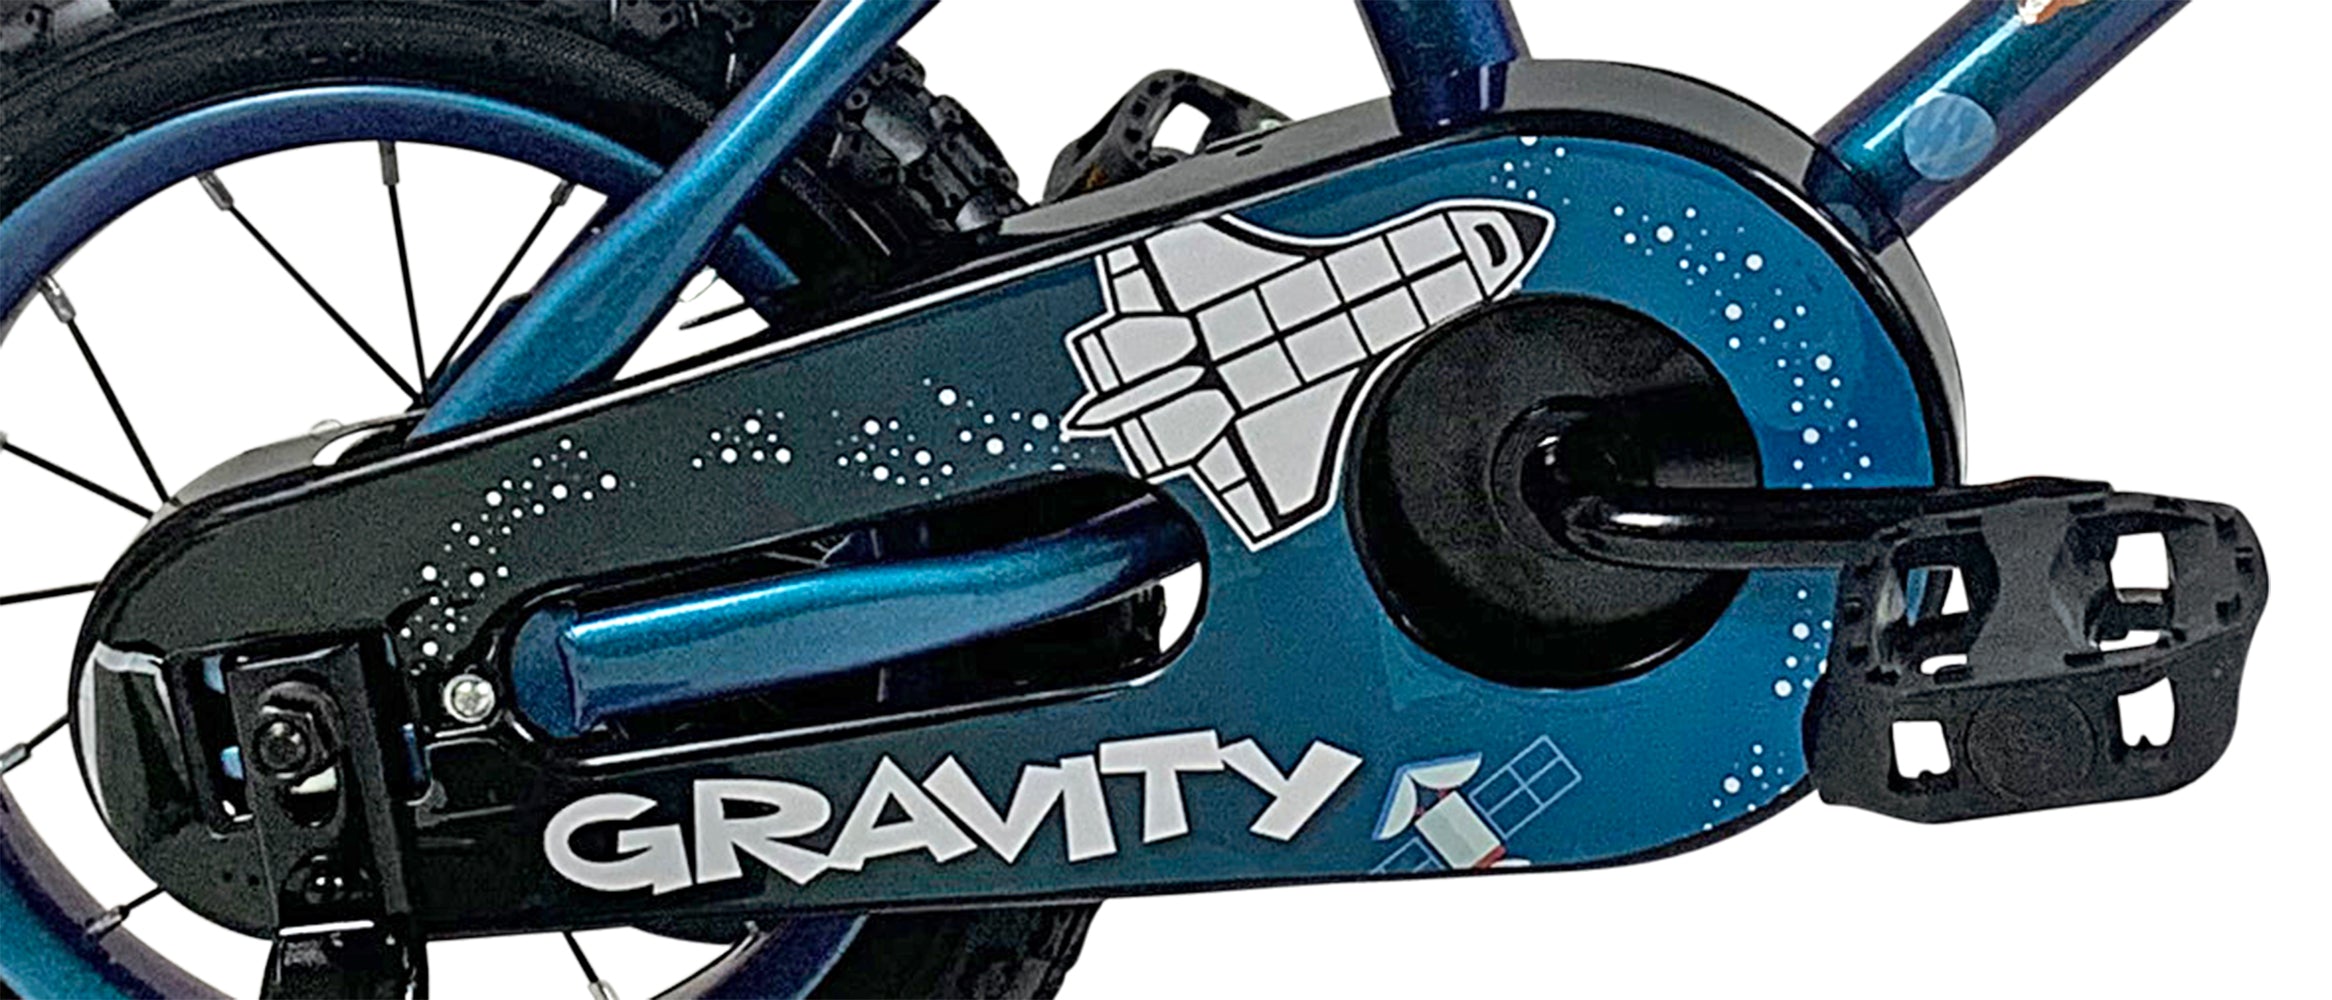 Vélo Gravity 12" avec casque